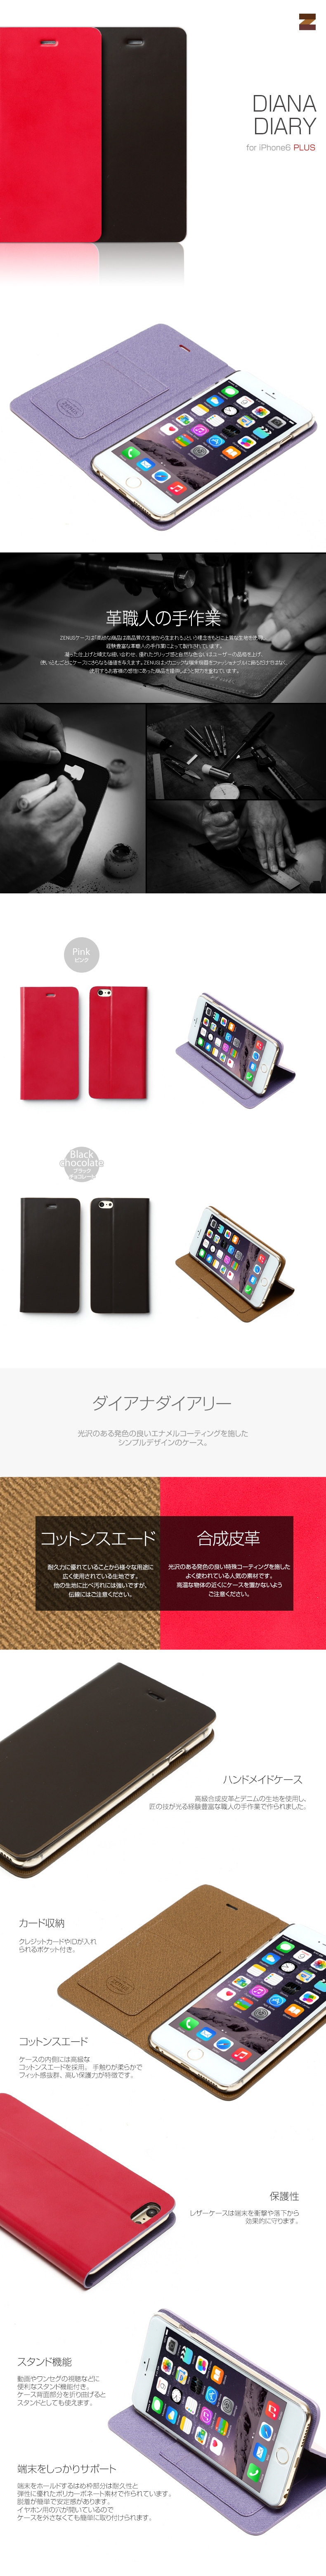 商品詳細-iPhone6Plus専用ケース